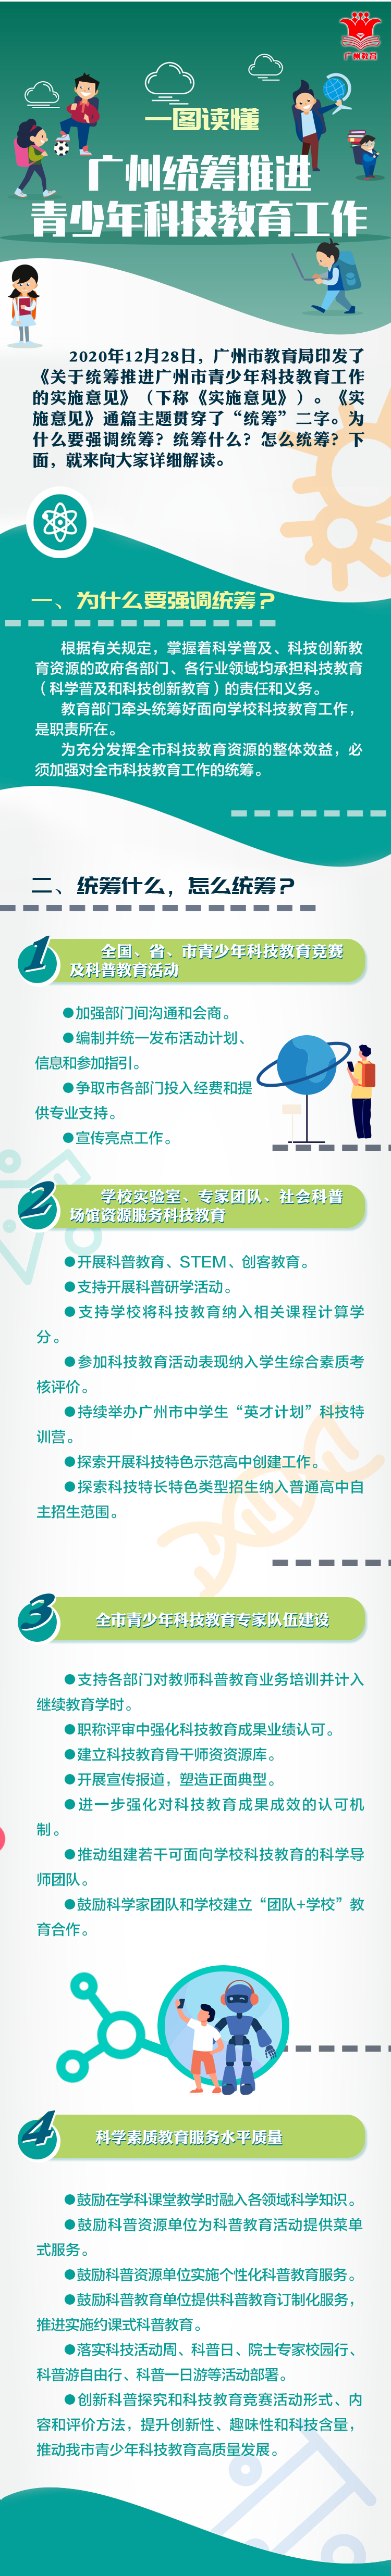 统筹推进广州市青少年科技教育工作一图.png